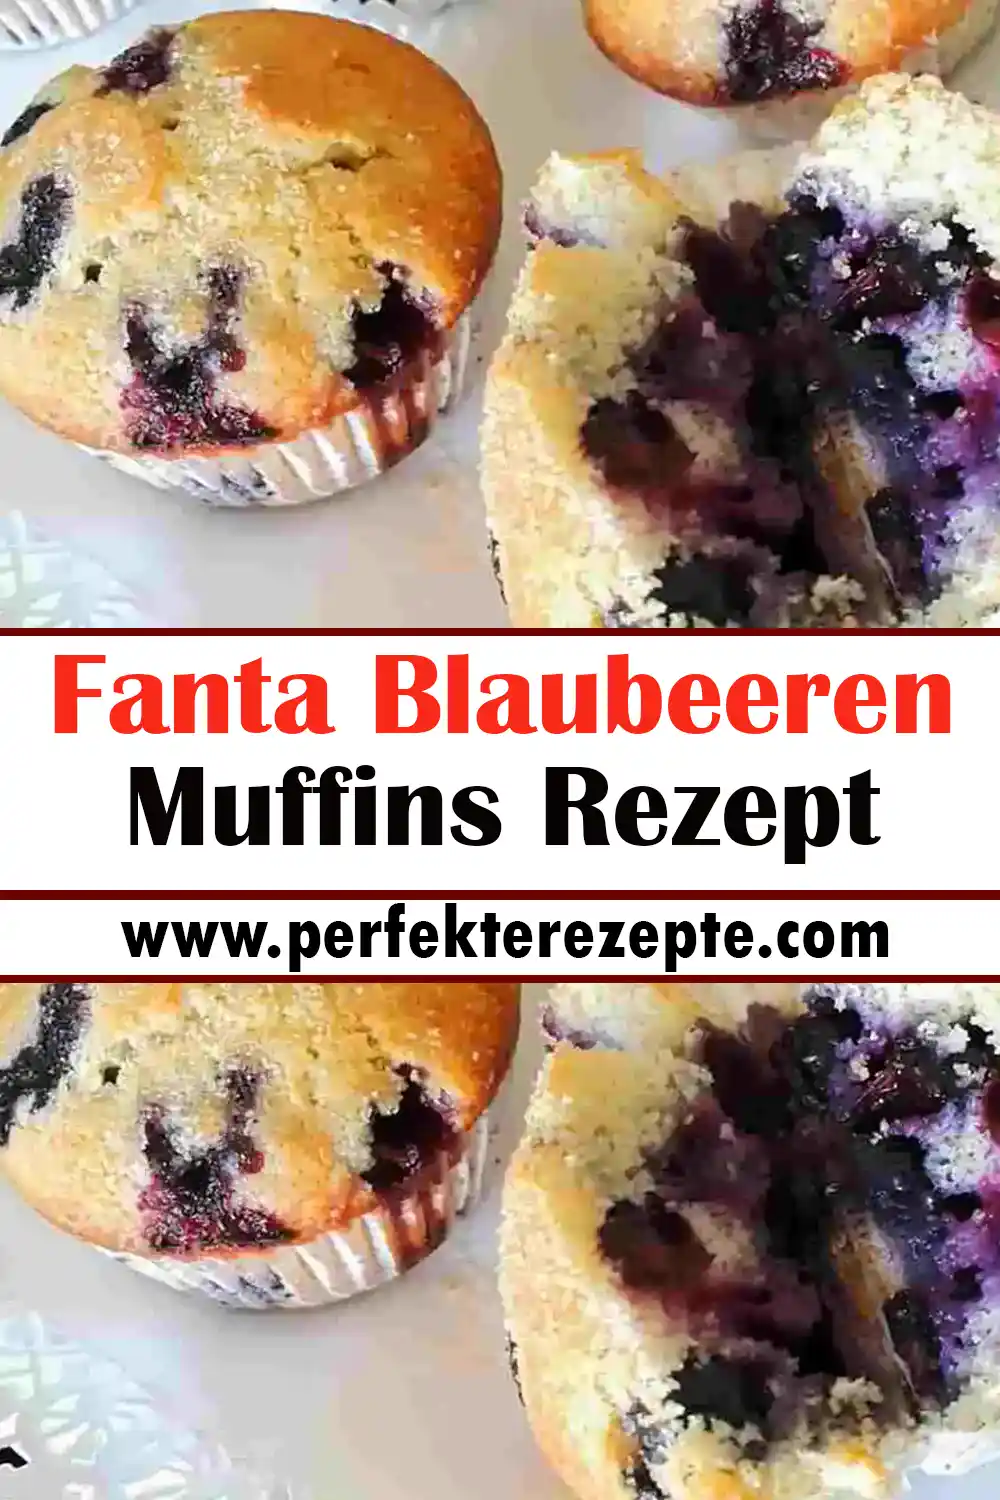 Fanta Blaubeeren Muffins Rezept